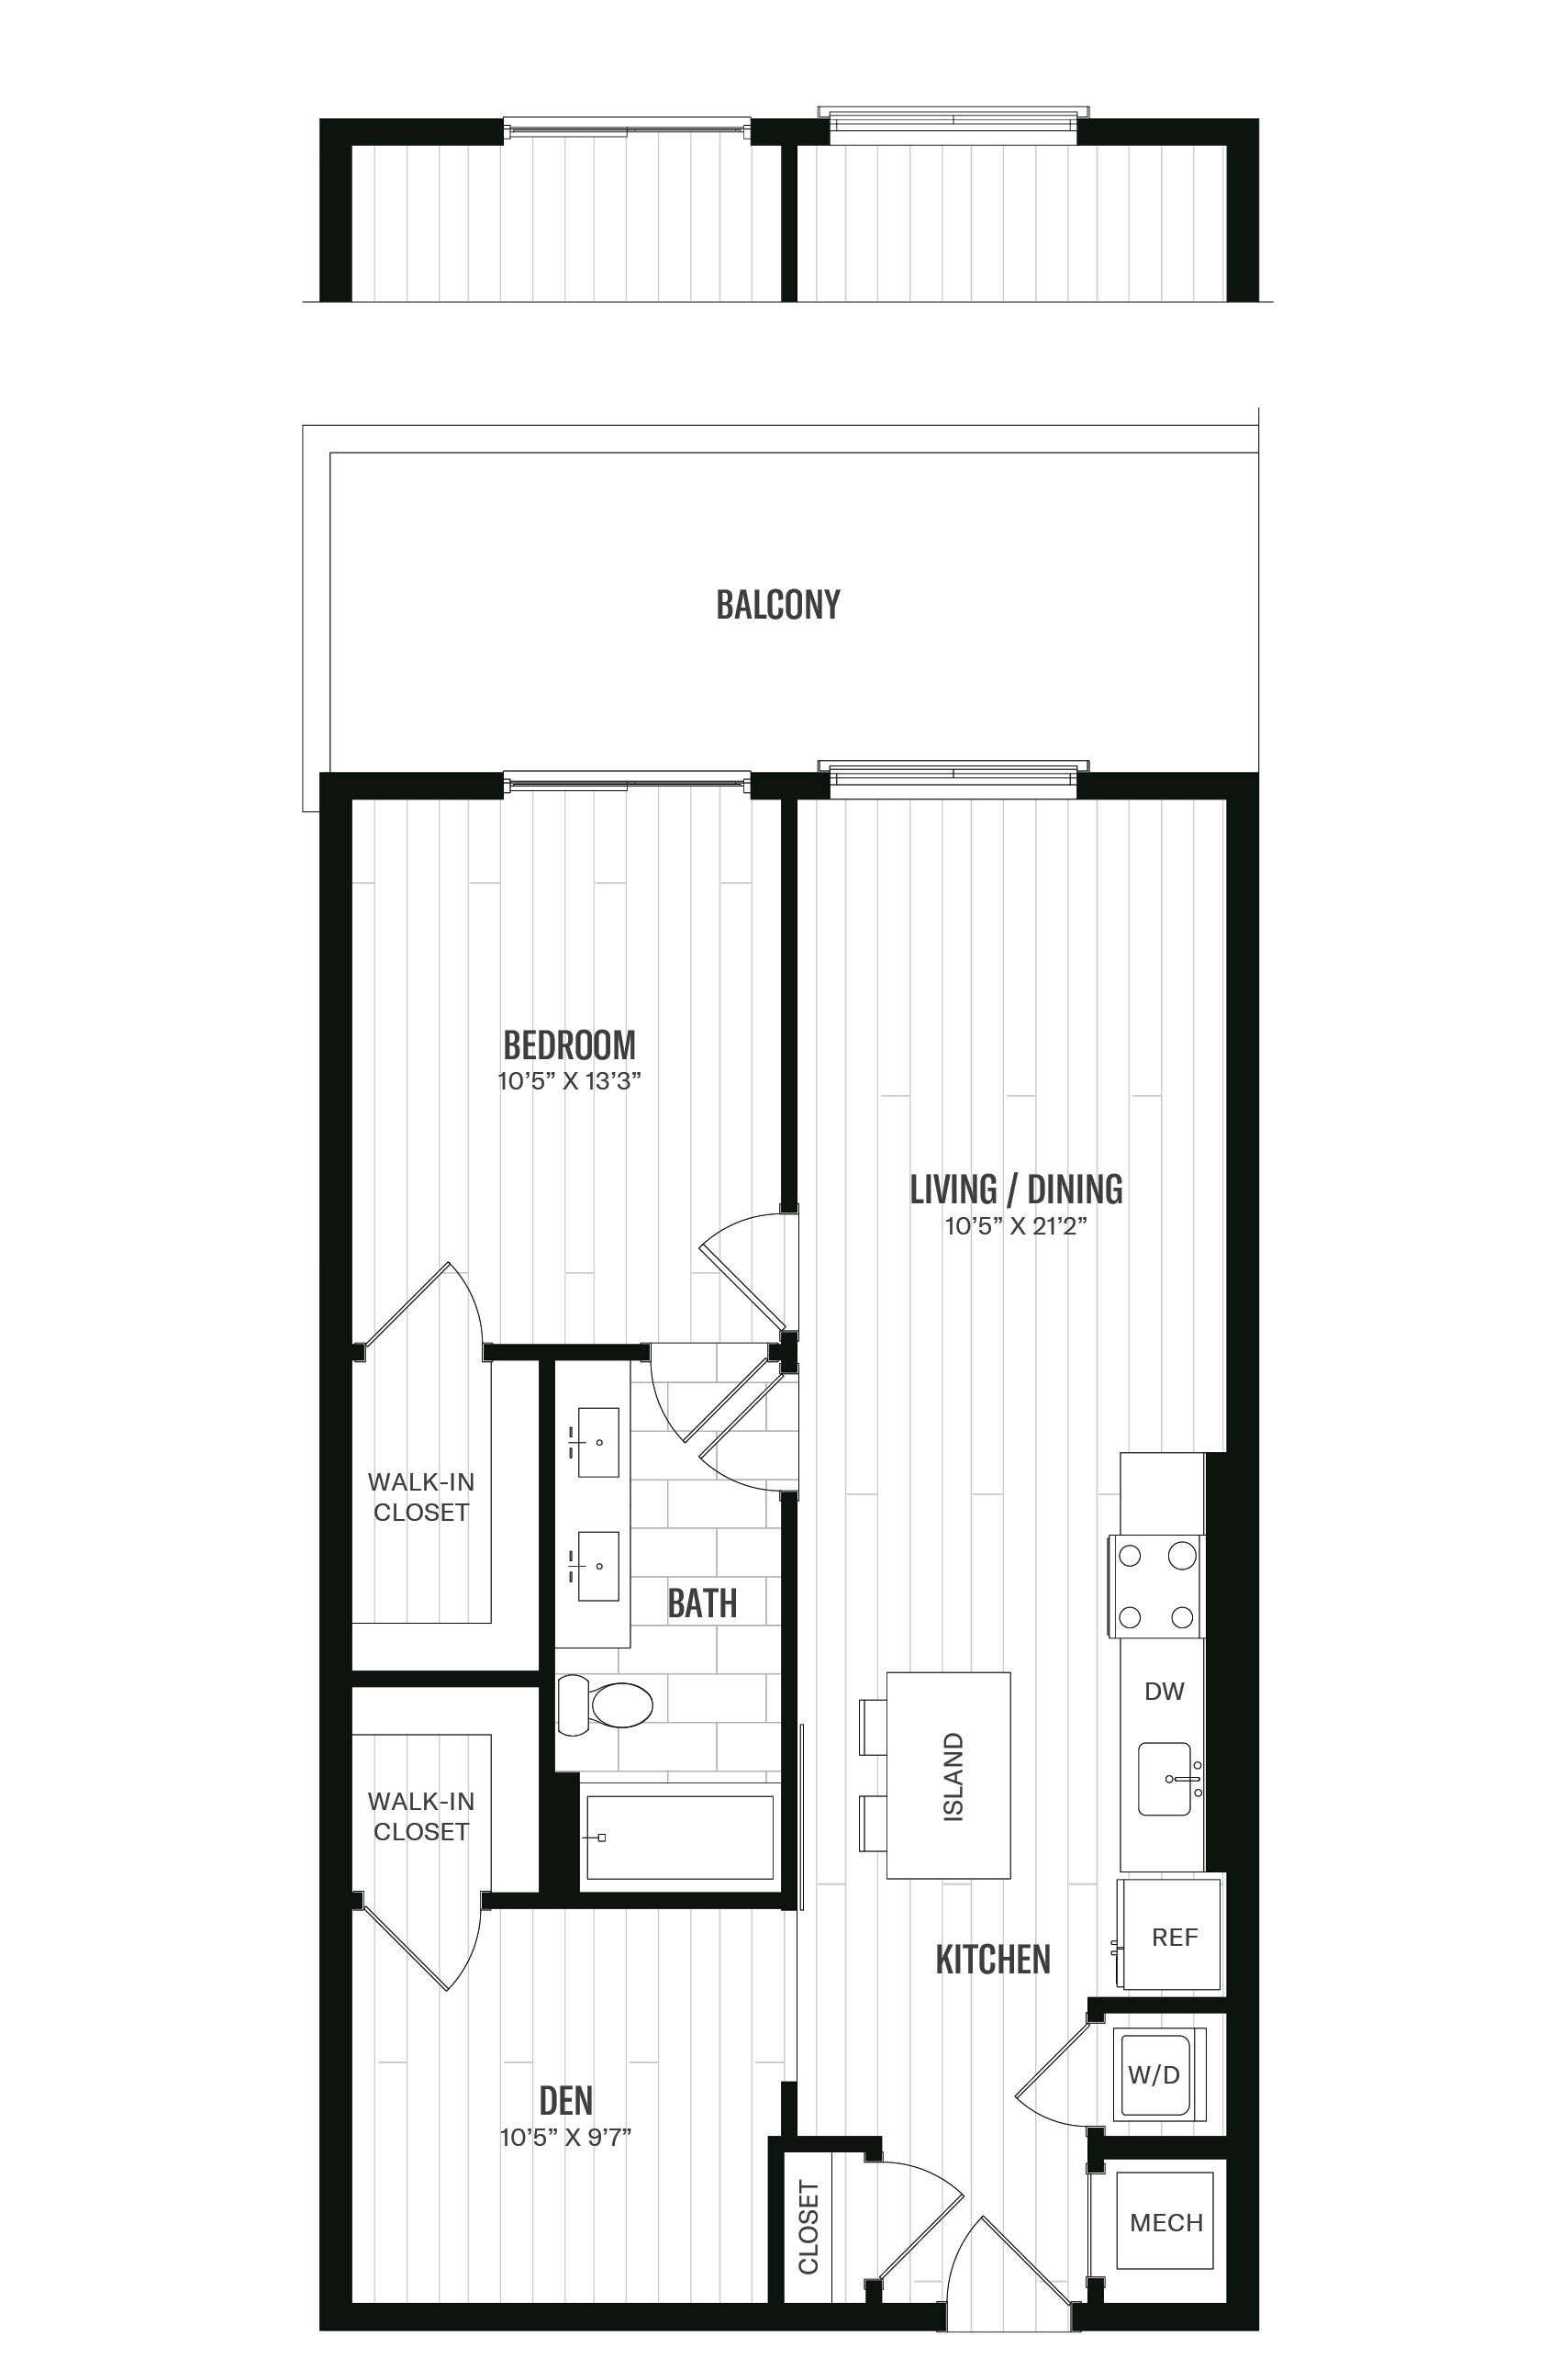 Floorplan image of unit 529